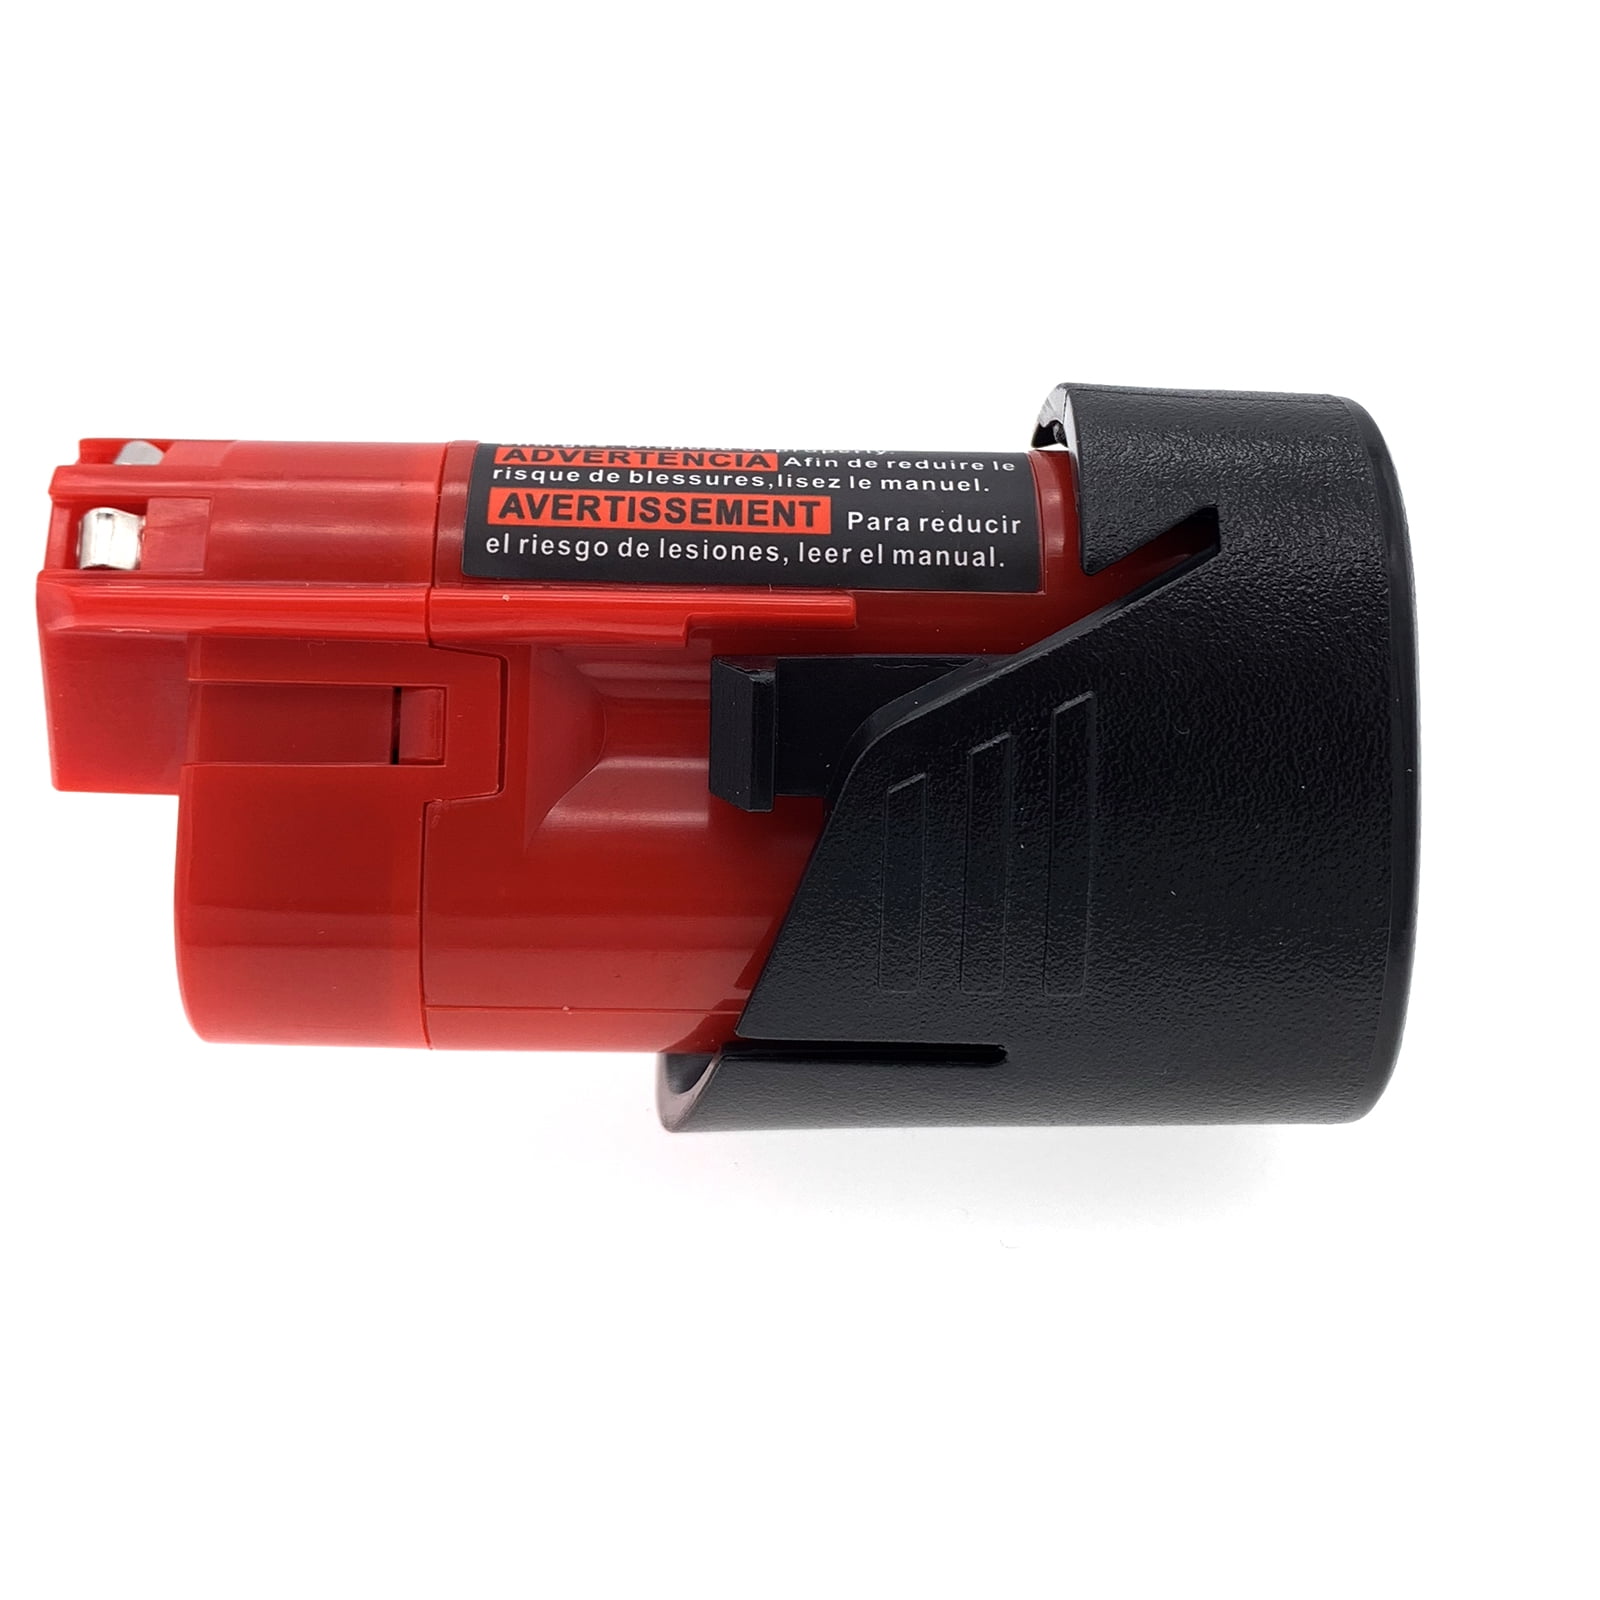 New 12V 12 Volt Red Lithium Battery Pack For Milwaukee 48-11-2401 M12